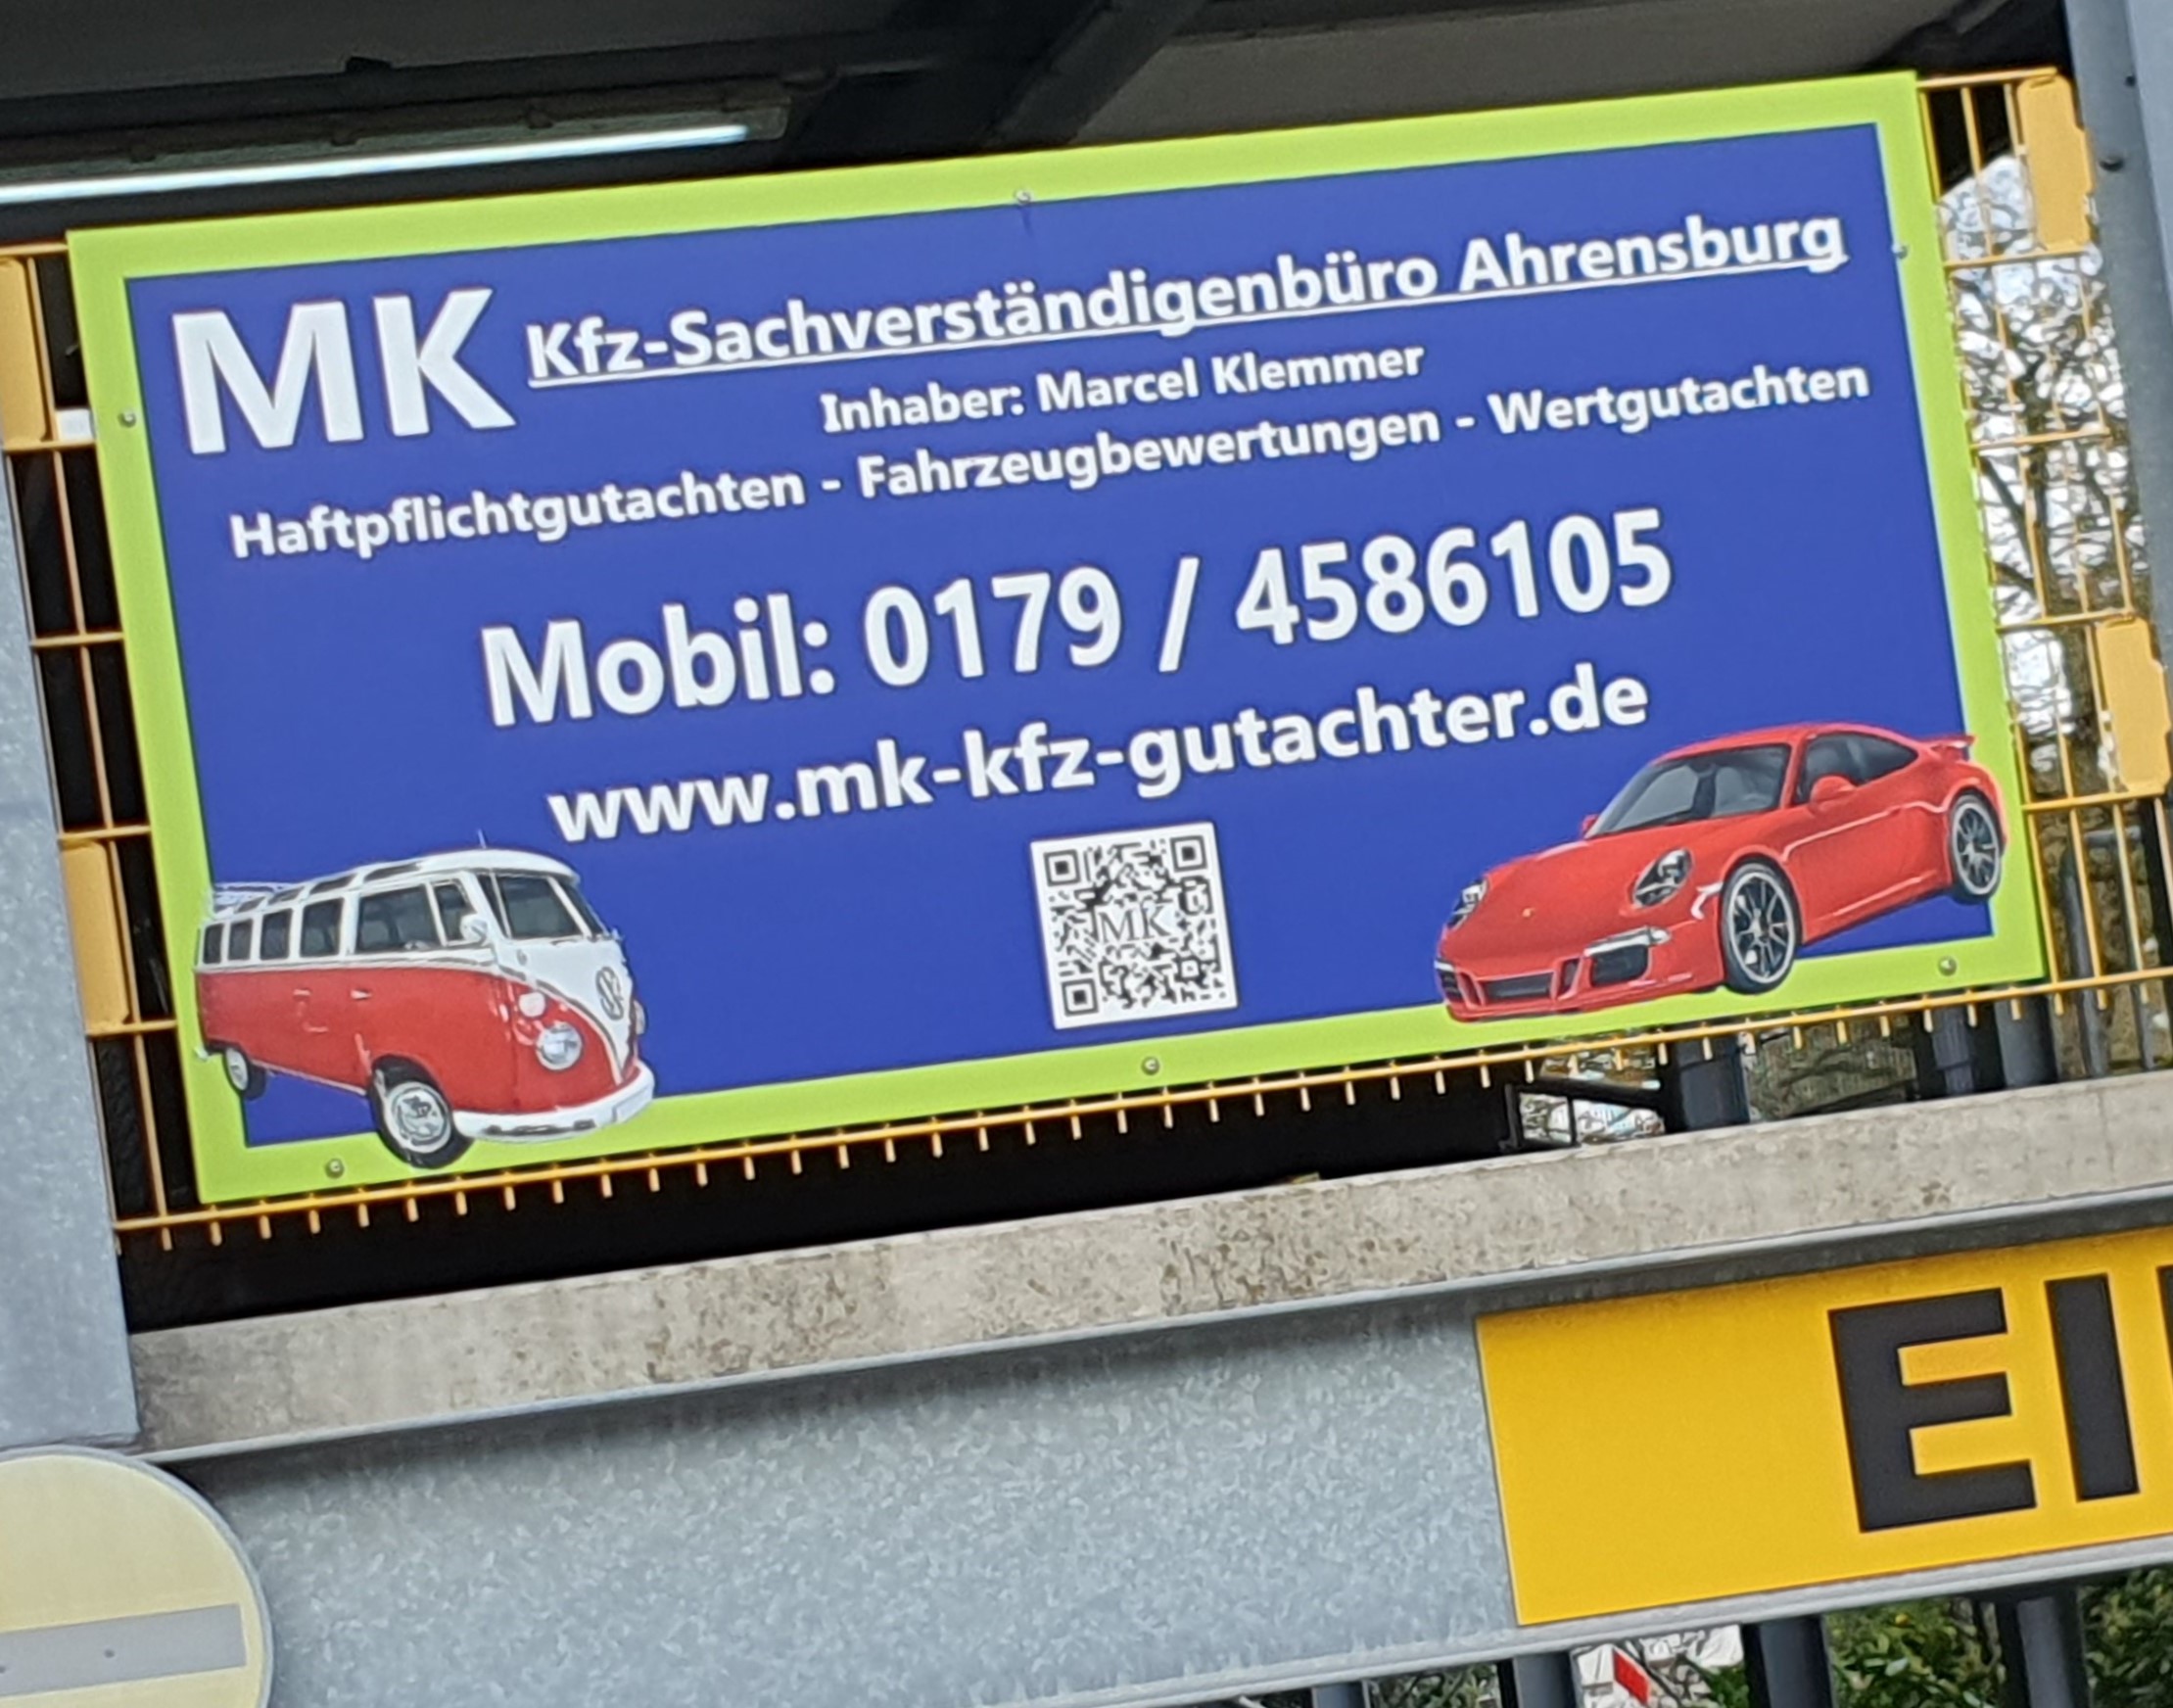 (c) Mk-kfz-gutachter.de